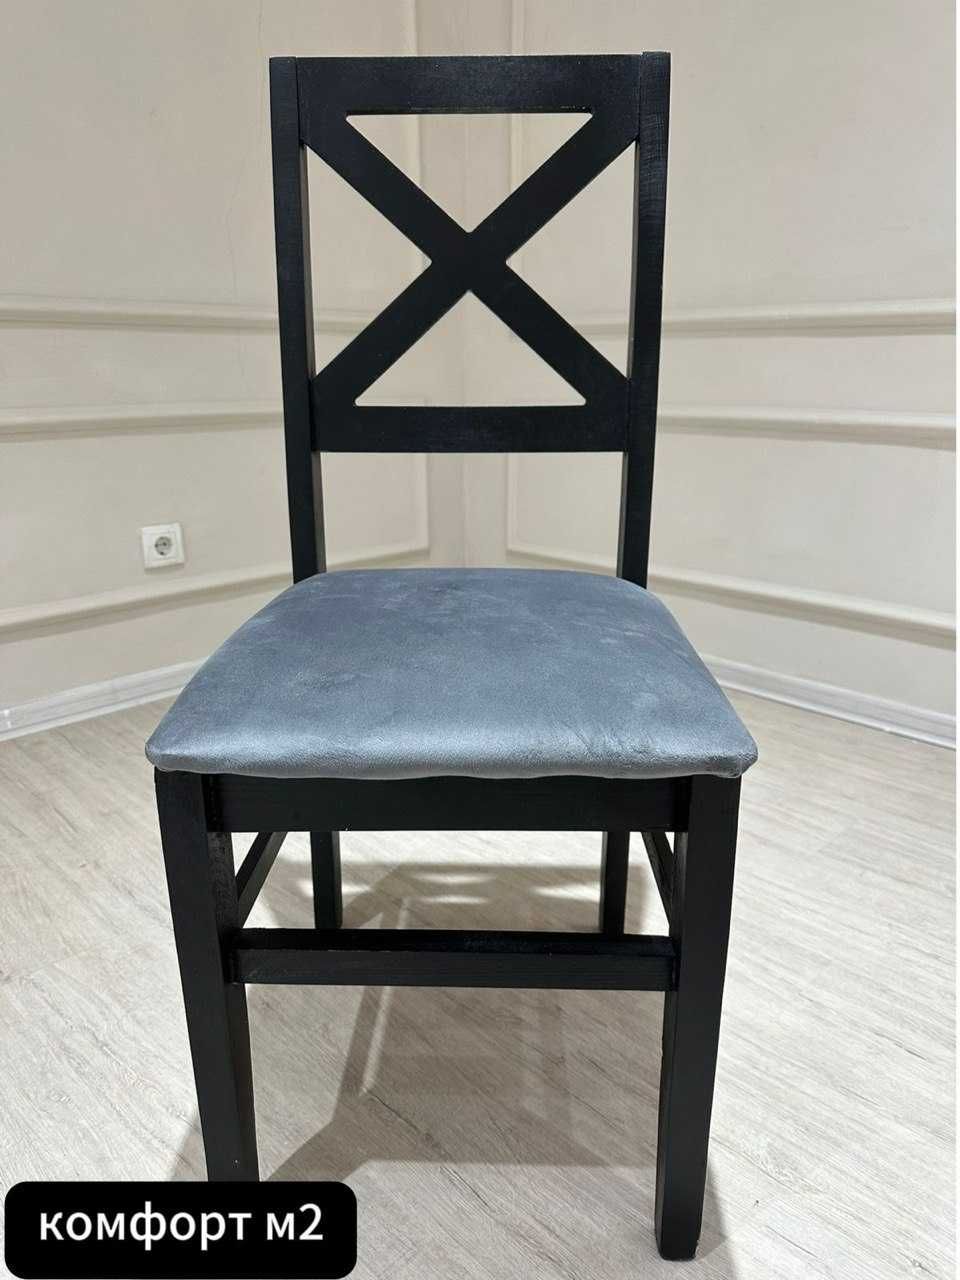 Элегантные столы и стулья: идеальное сочетание стиля, комфорта и идеал